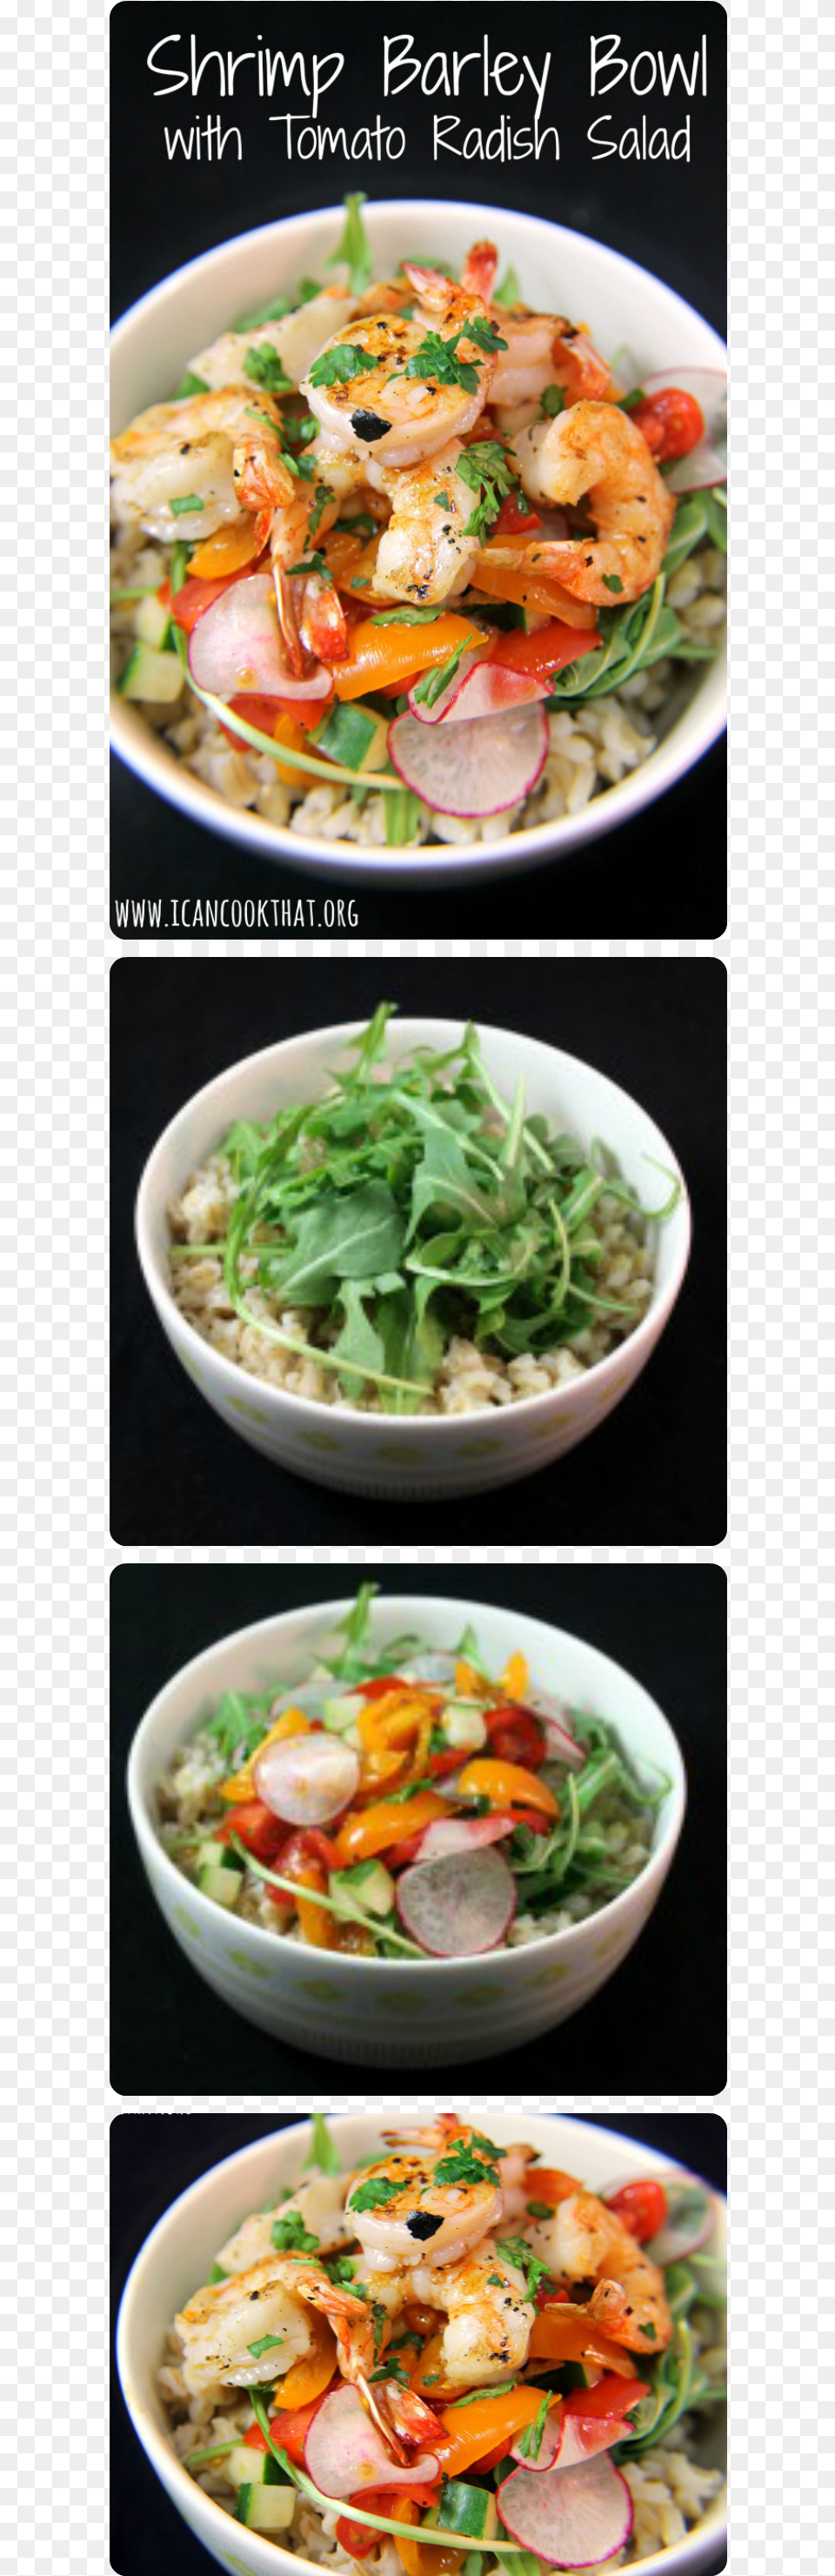 Leaf Vegetable, Meal, Food, Lunch, Dish Png Image